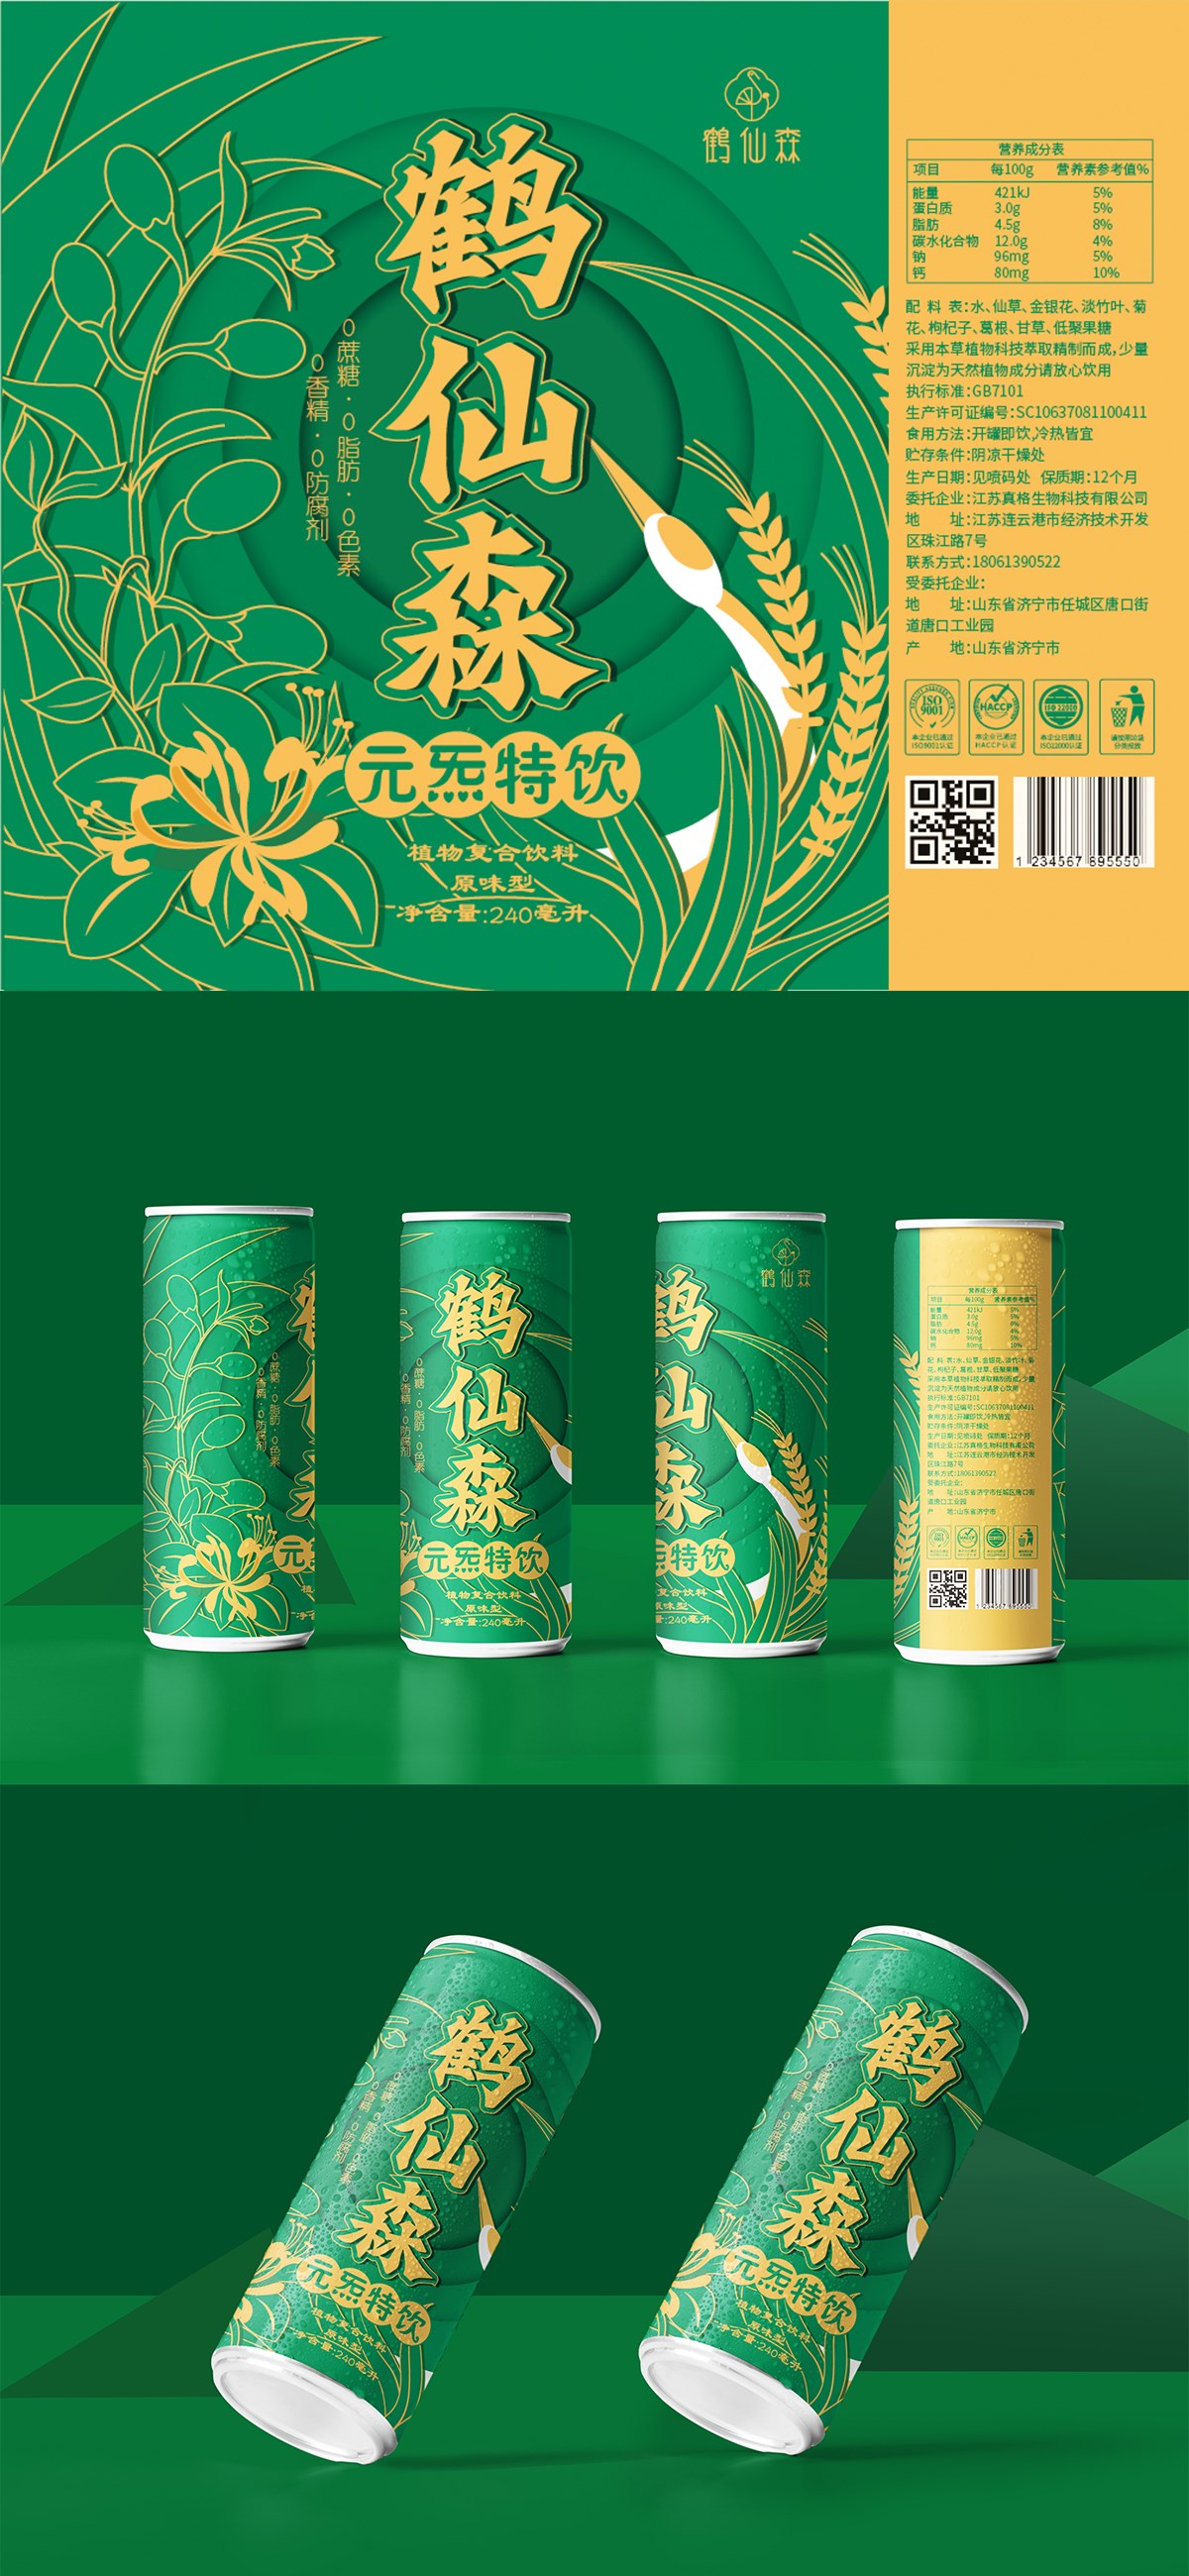 鹤先森-植物饮品包装设计案例